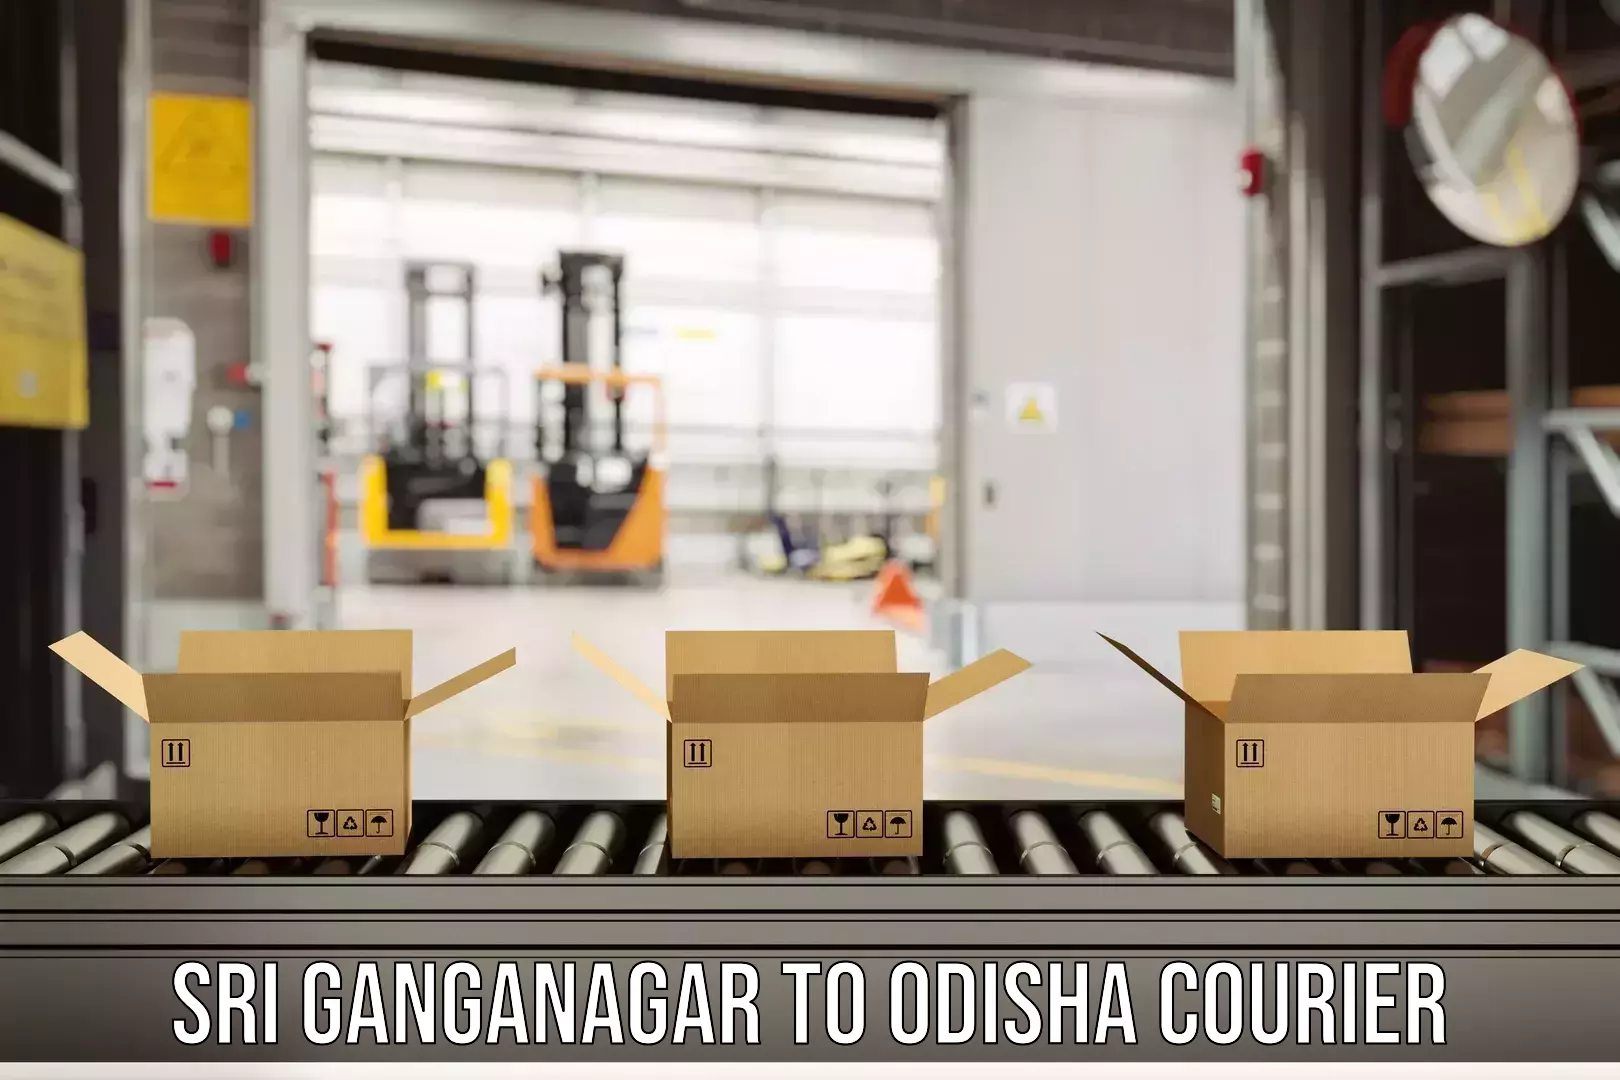 Customer-centric shipping Sri Ganganagar to Chandinchowk